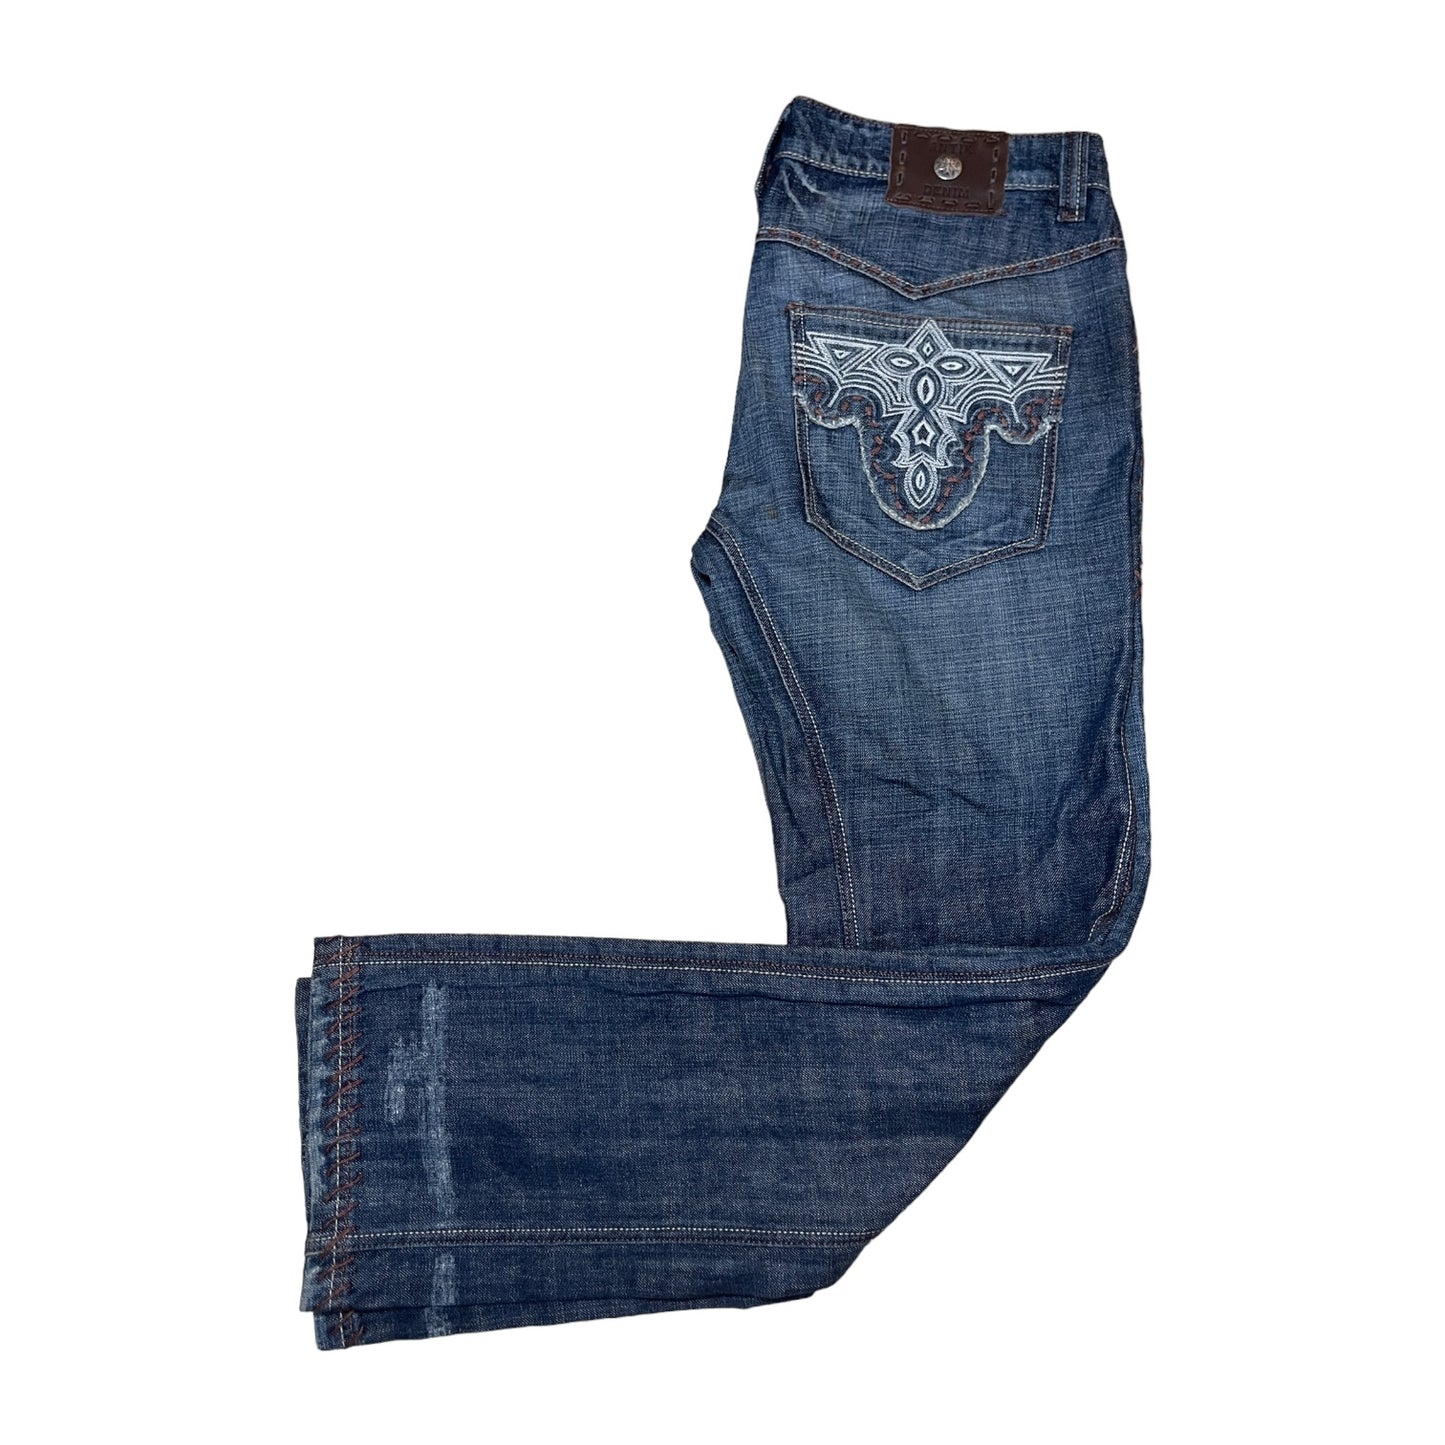 Antik Denim Vintage Flare Jeans